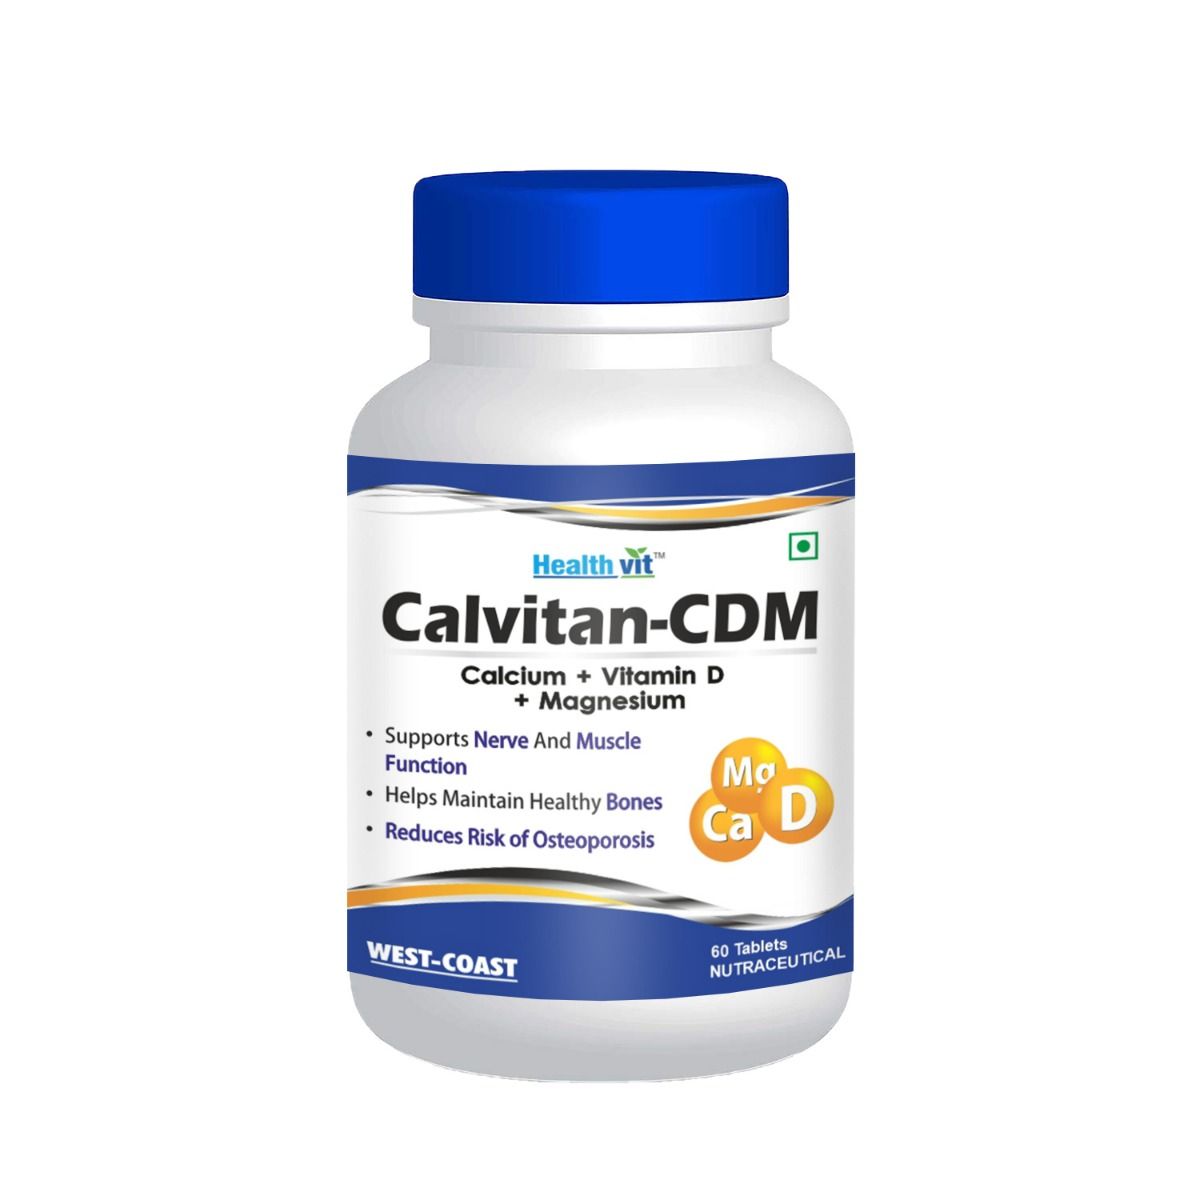 Buy Healthvit Calvitan-CDM Calcium + Vitamin D + Magnesium - 60 Tablets Online